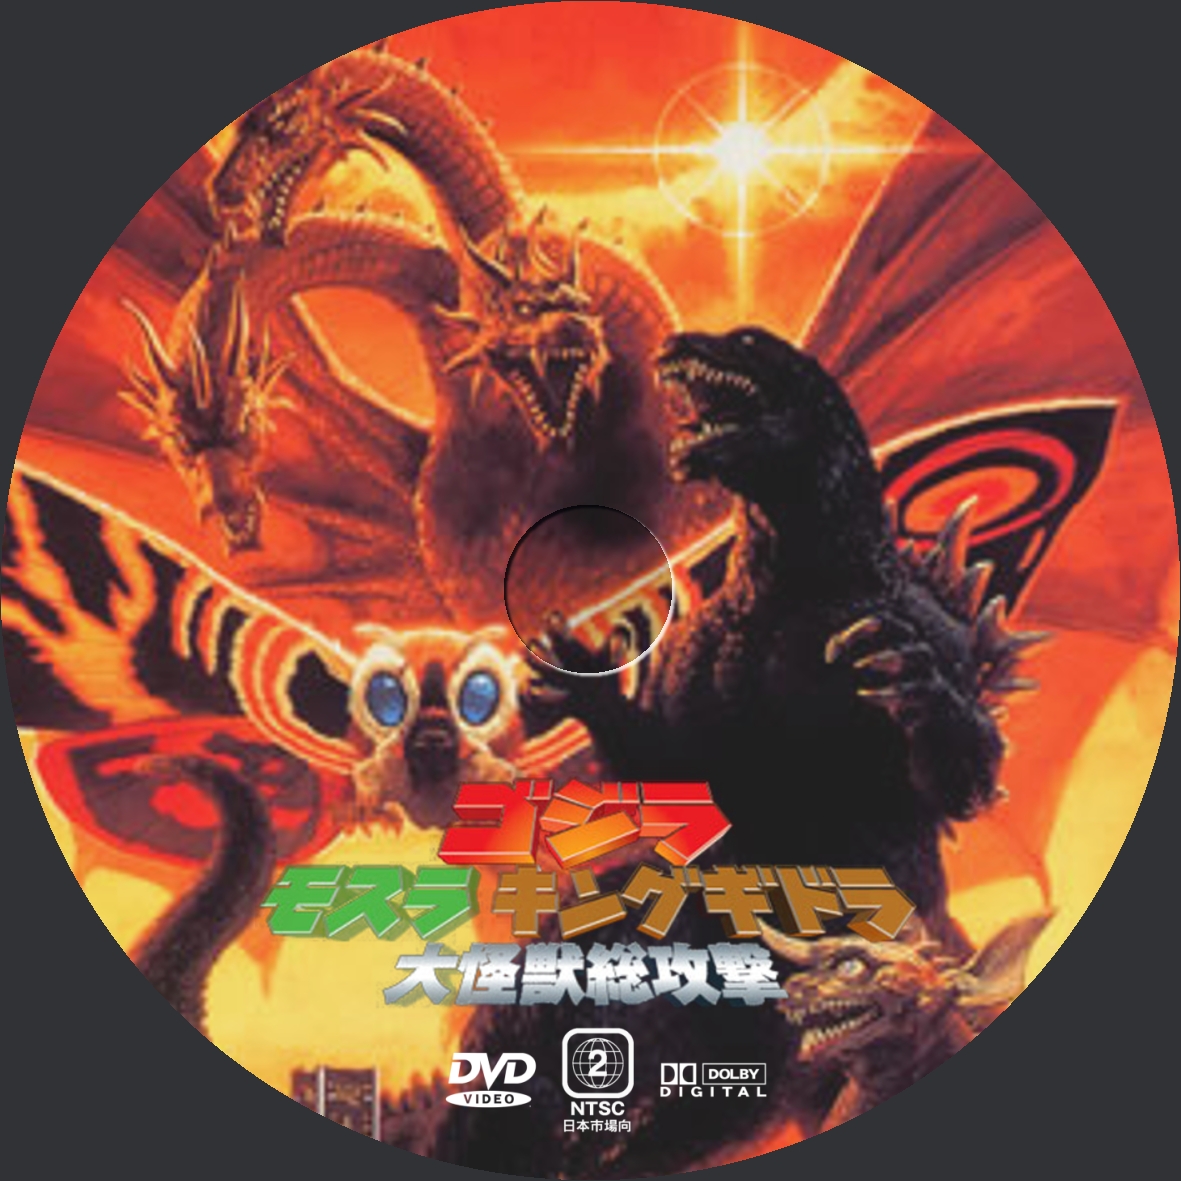 Yosshi's DVDラベル:ゴジラ モスラ キングギドラ大怪獣総攻撃 DVDラベル